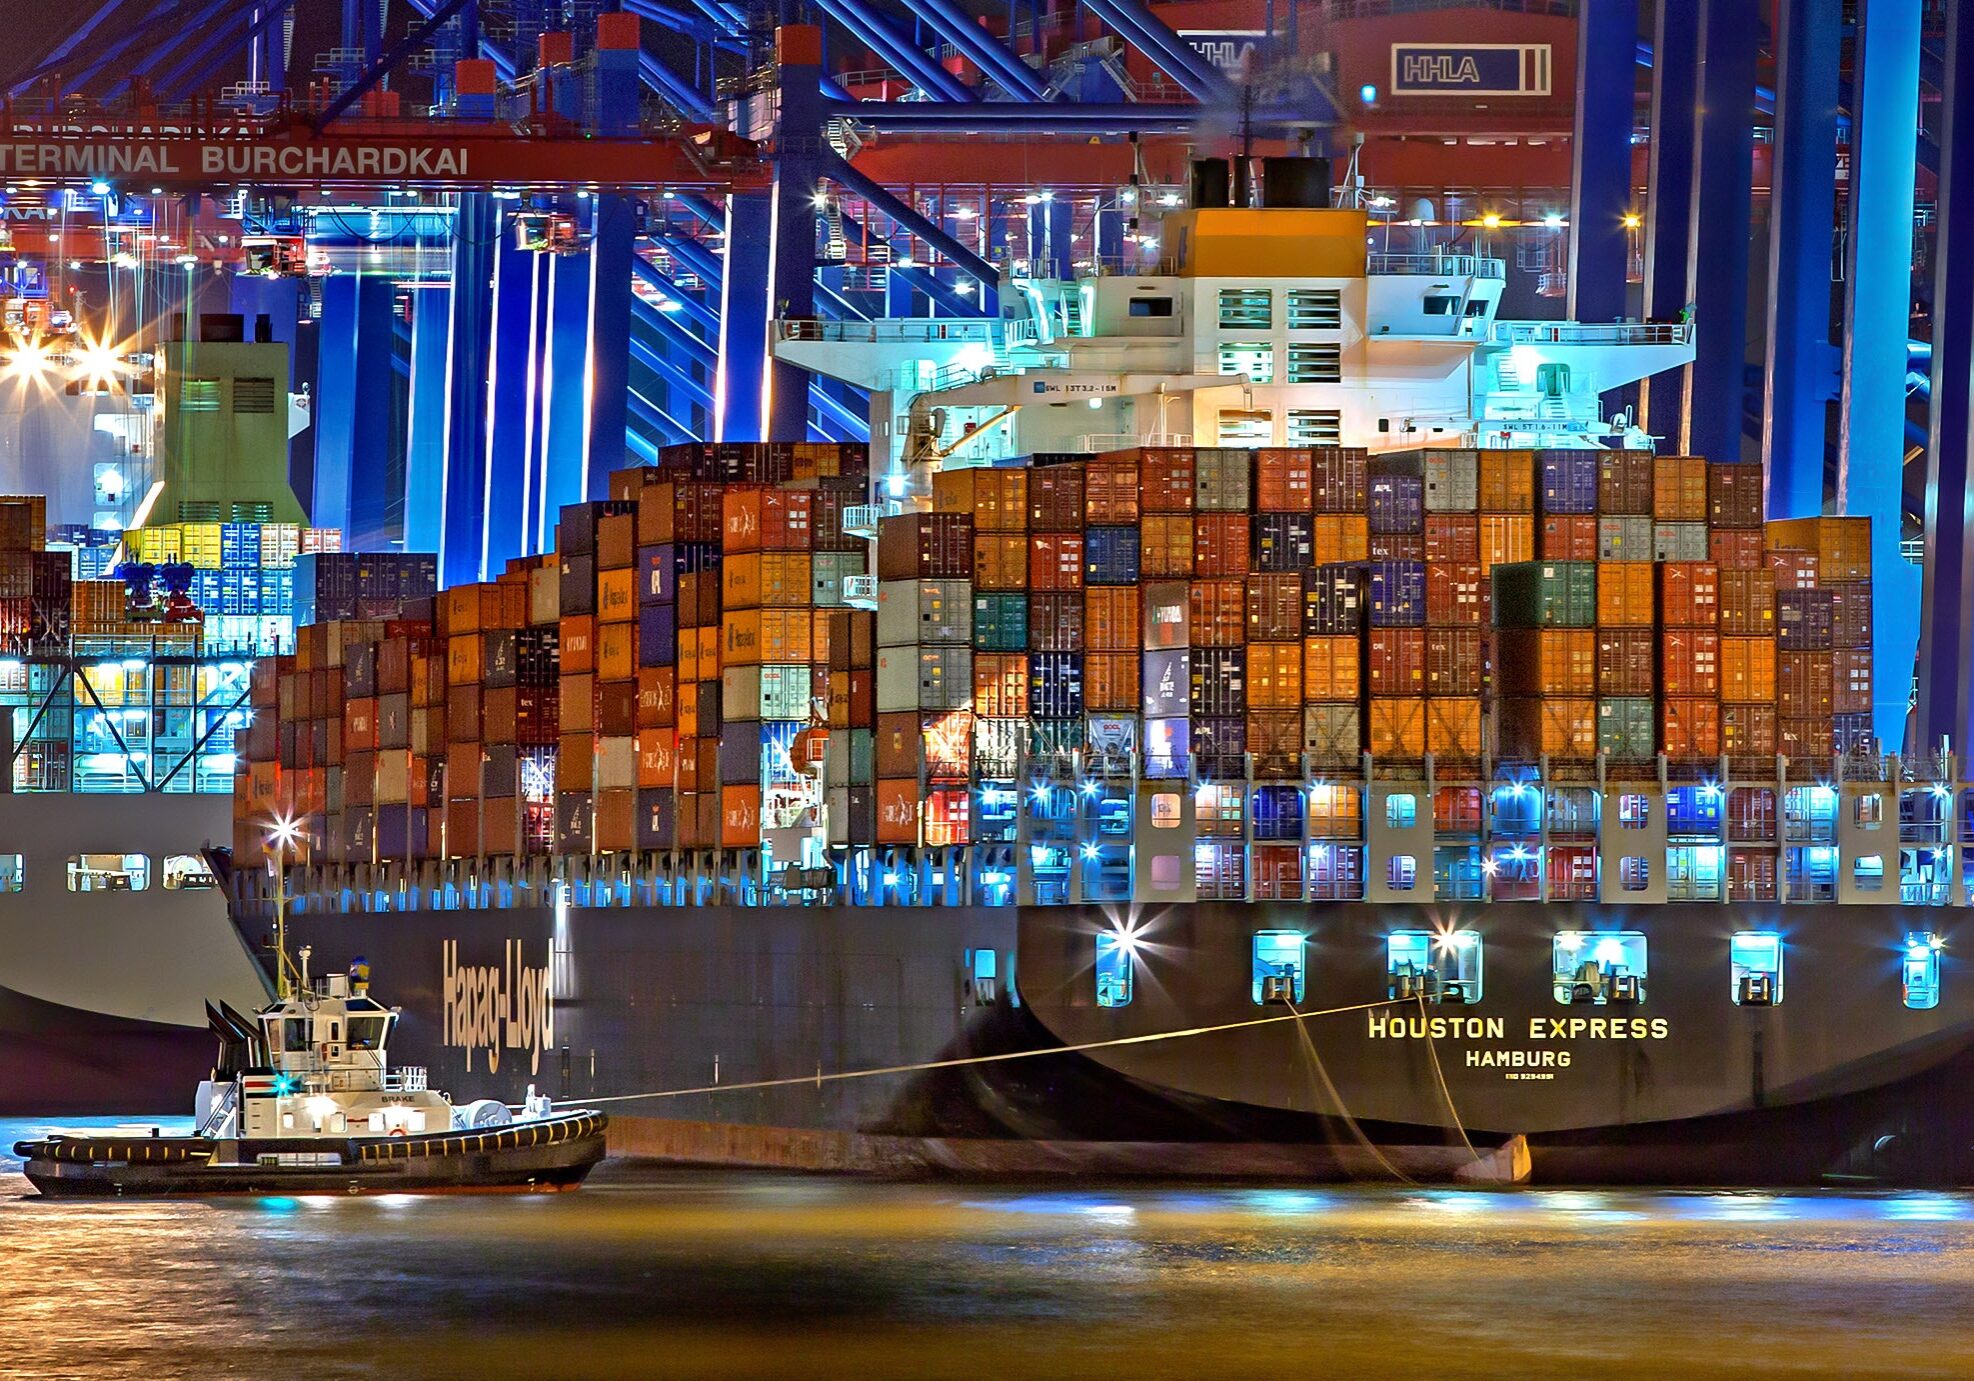 boats-cargo-cargo-container-753331